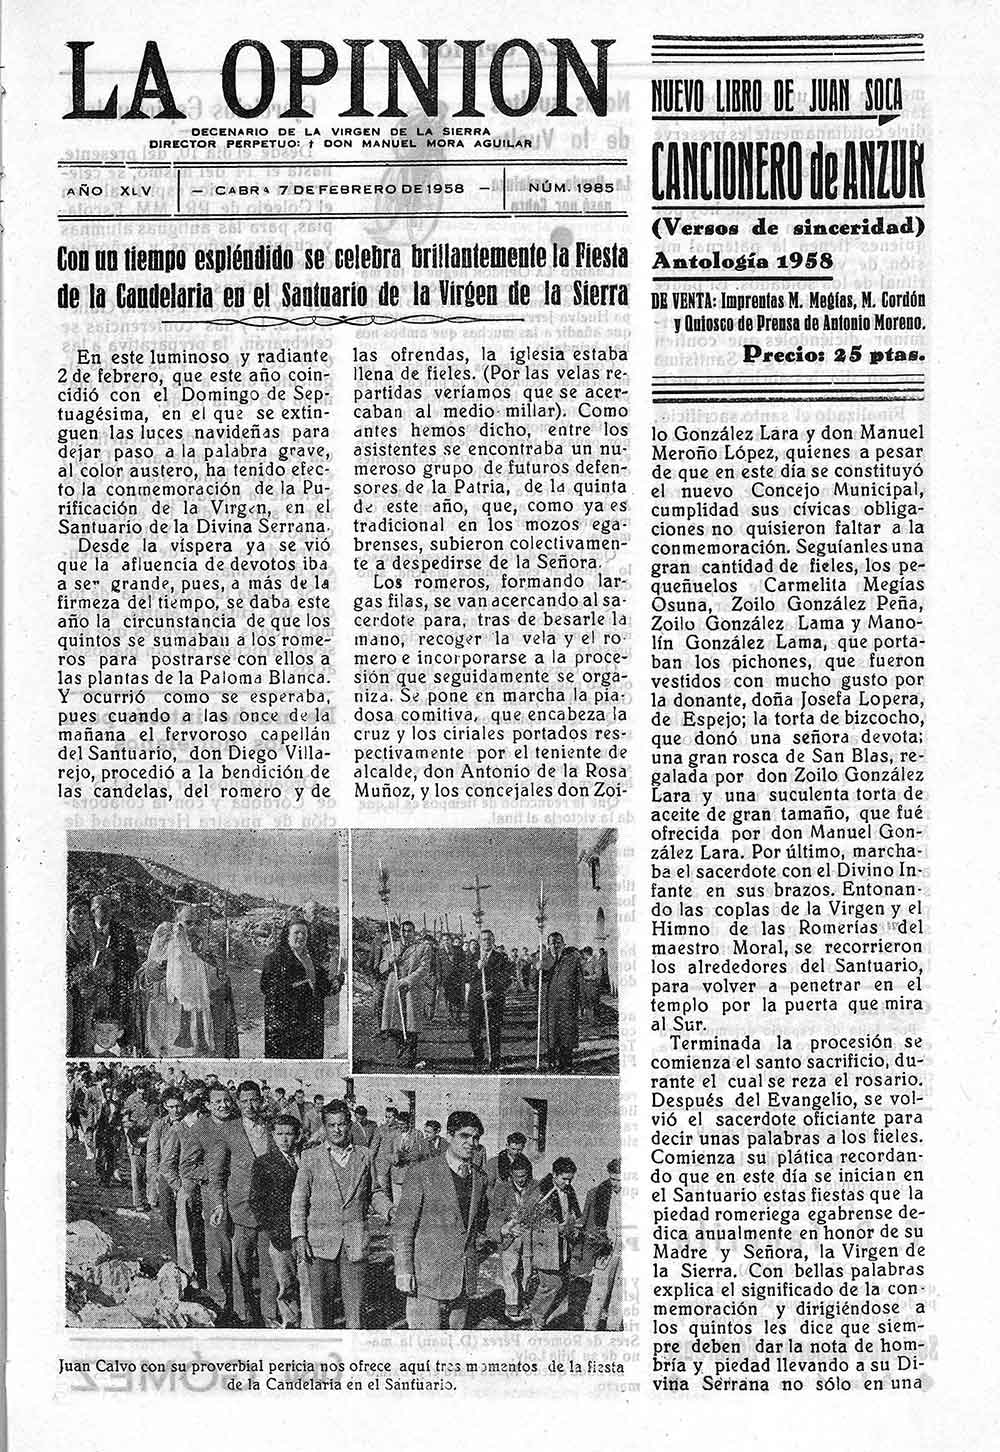 Recopilación de fotos y artículos de «La opinión». Prensa de Cabra de Córdoba